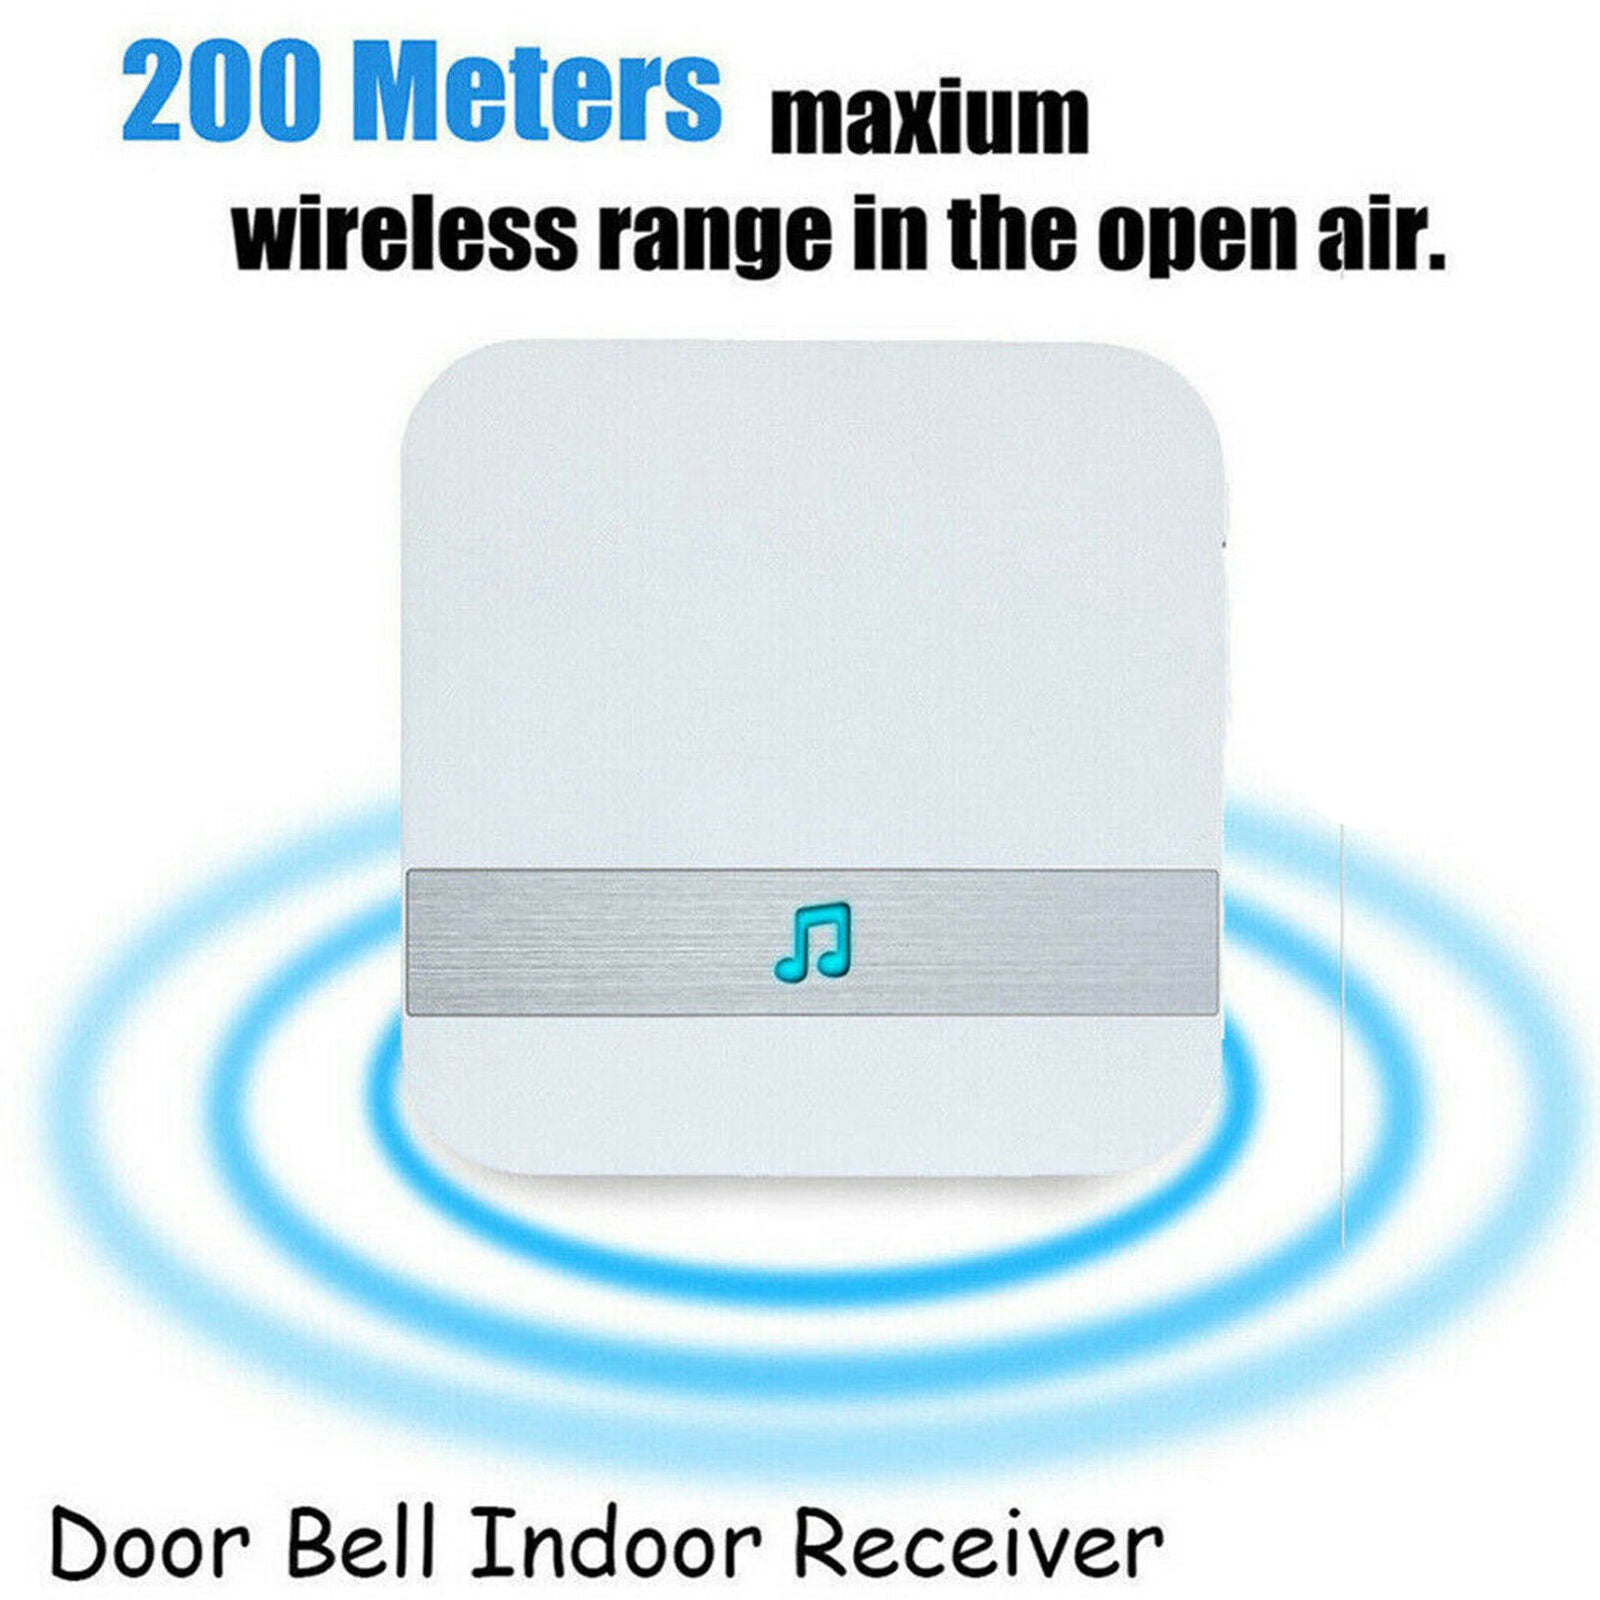 Smart Wireless WiFi Doorbell Chime Receiver Ding dong Door Bell UK Plug